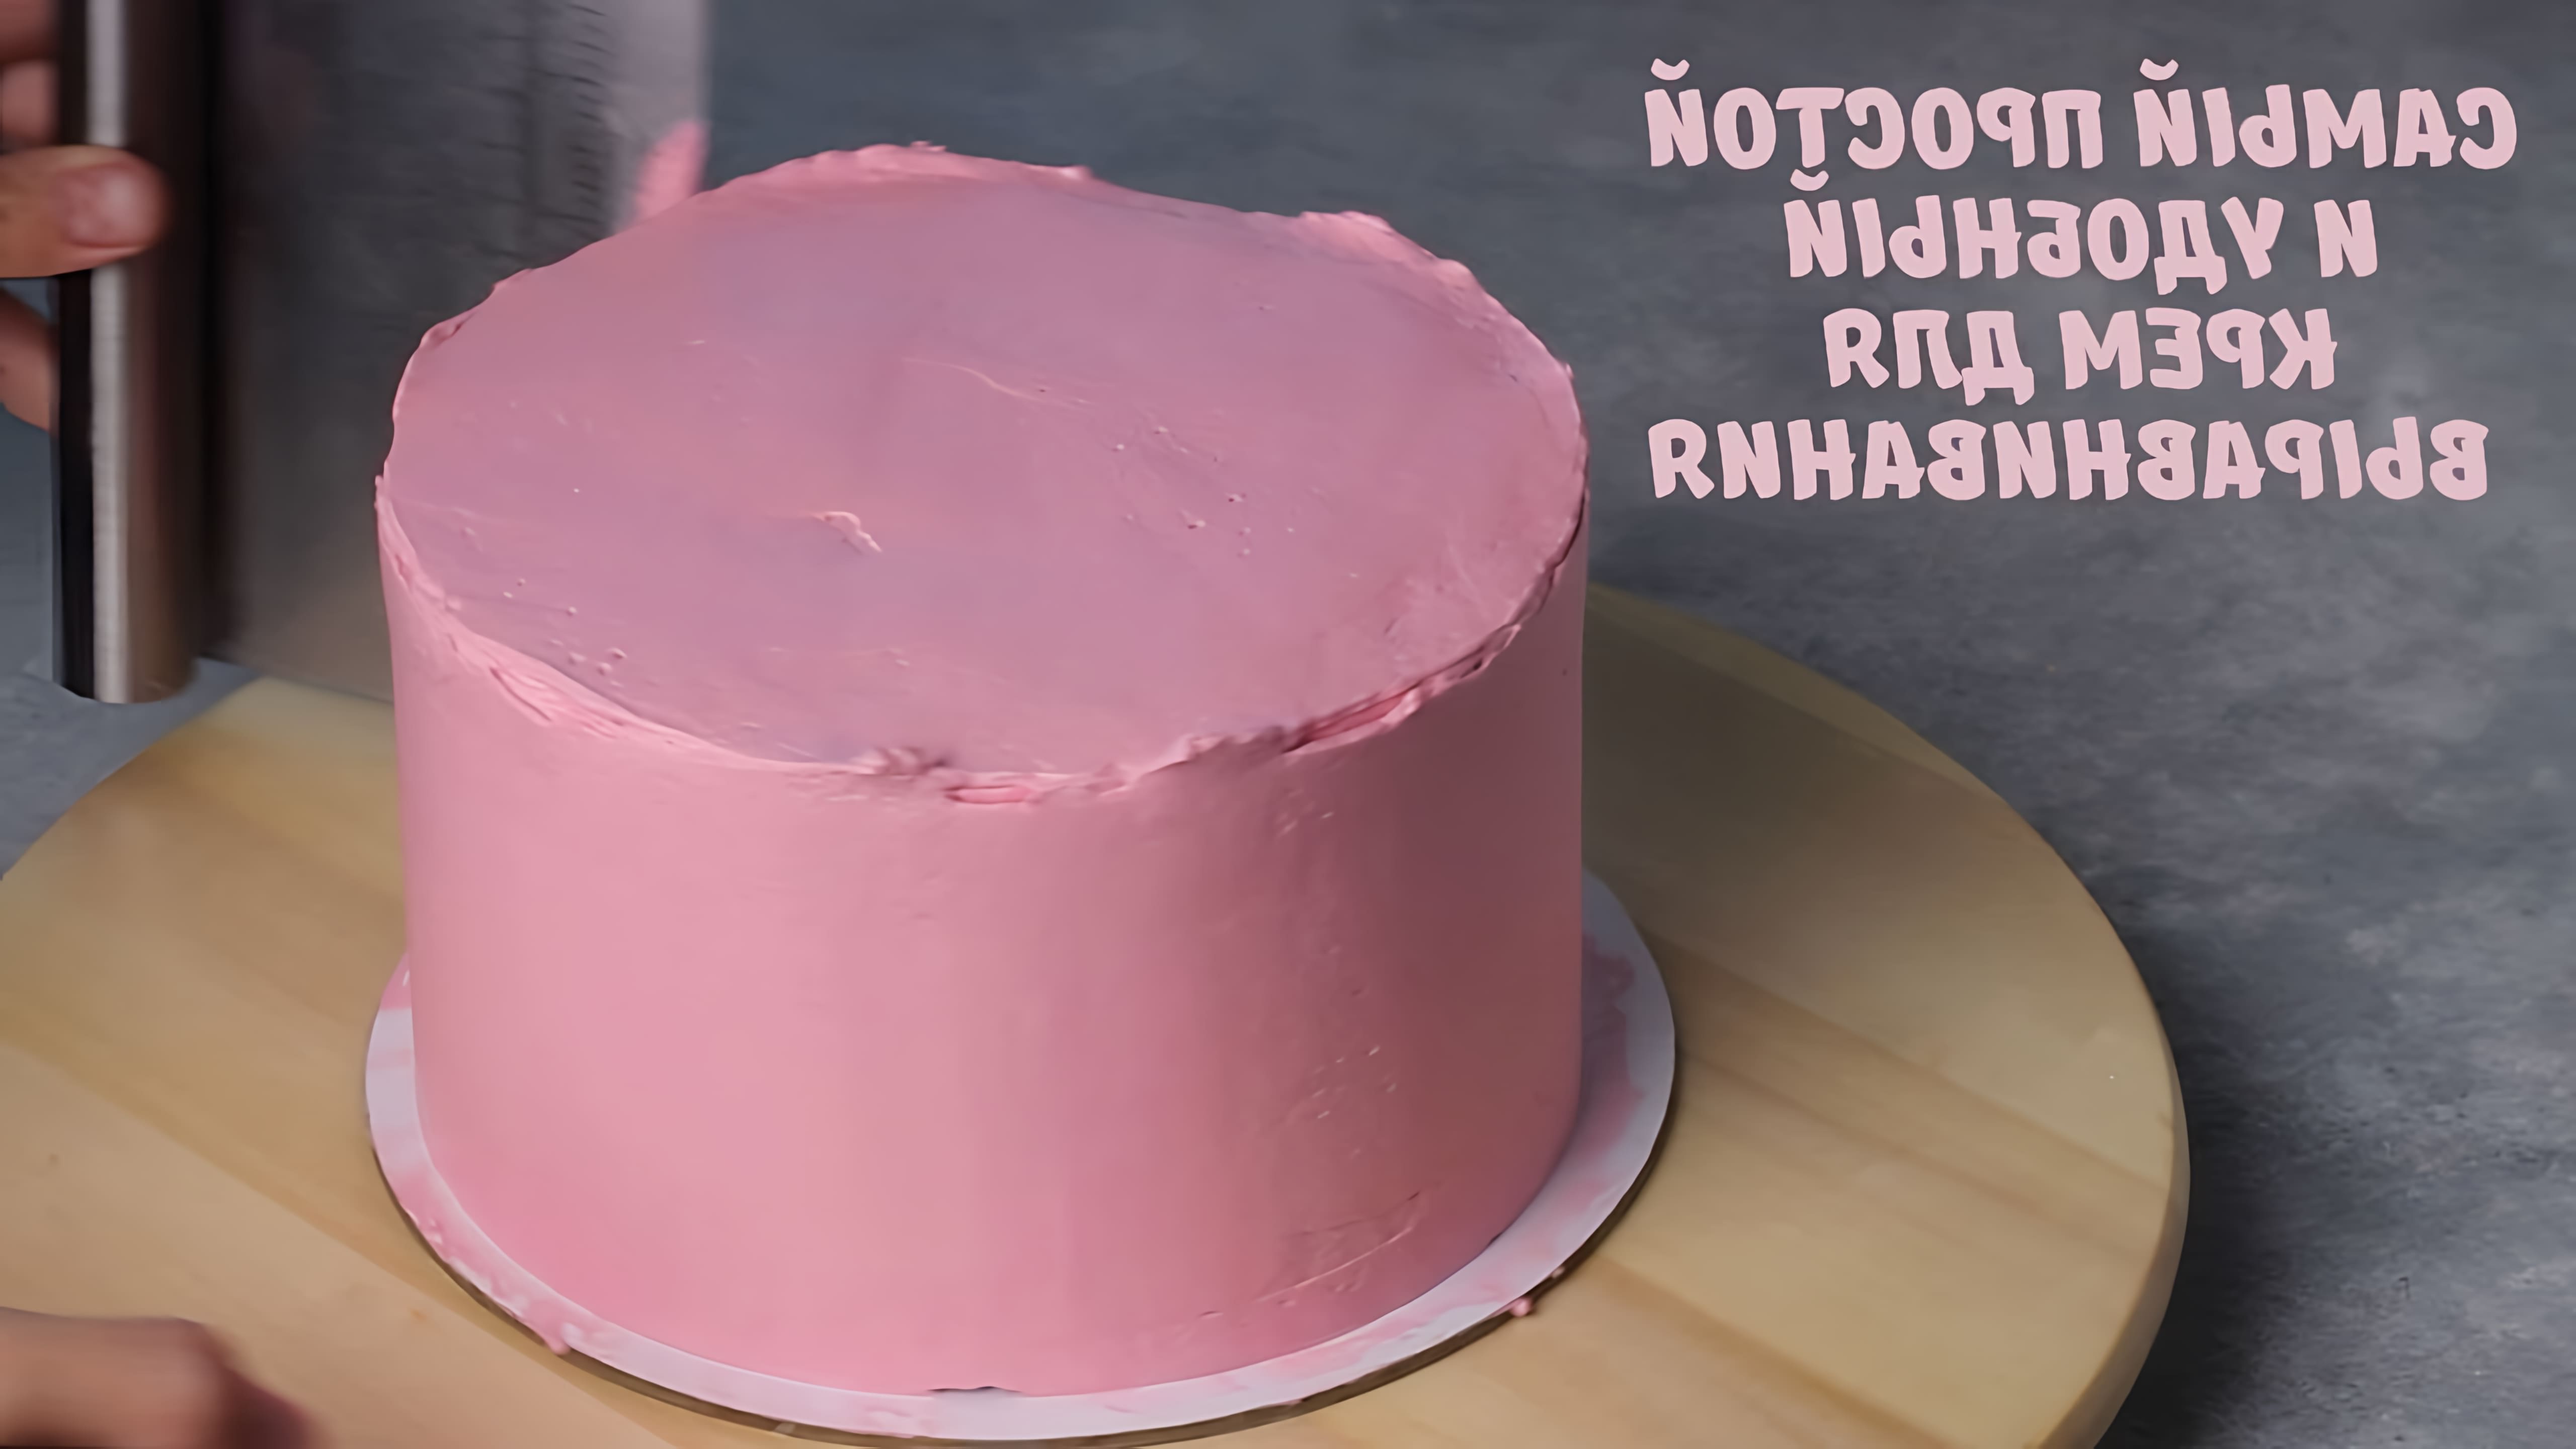 В этом видео демонстрируется рецепт простого и удобного крема для выравнивания торта